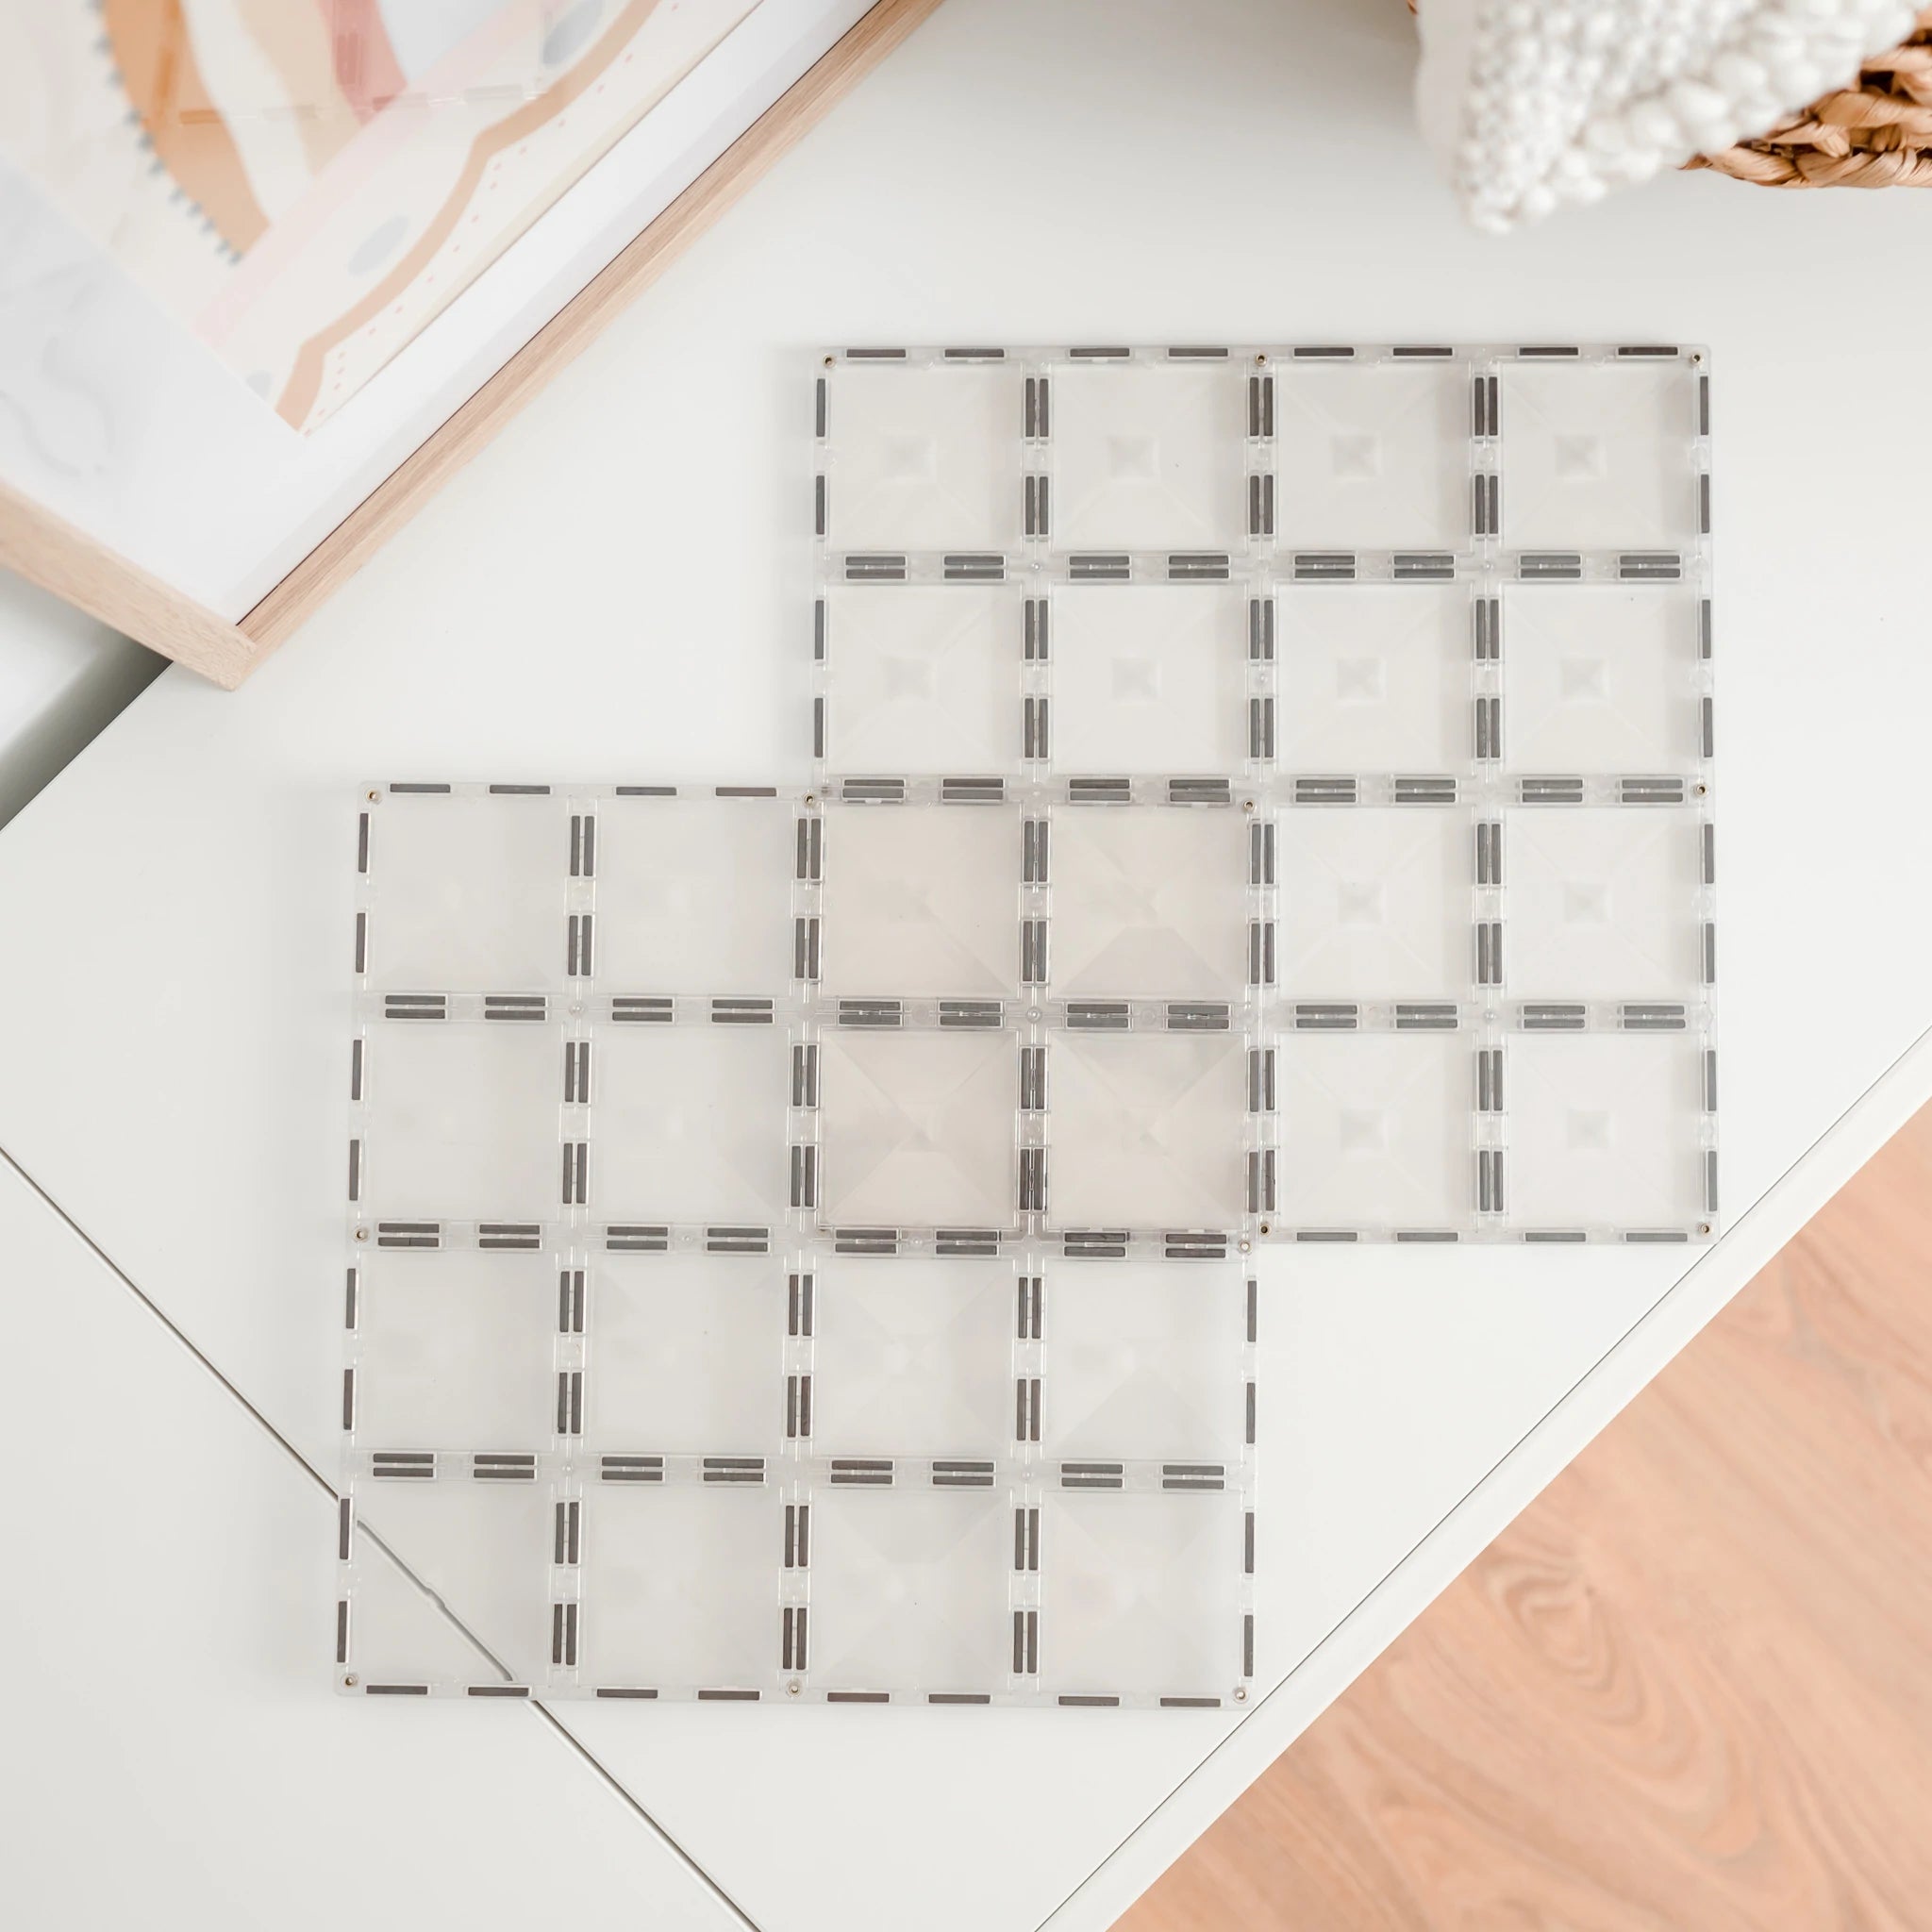 Connetix Tiles Magnetic Building Tiles Clear Base Plate – 2 Piece Set